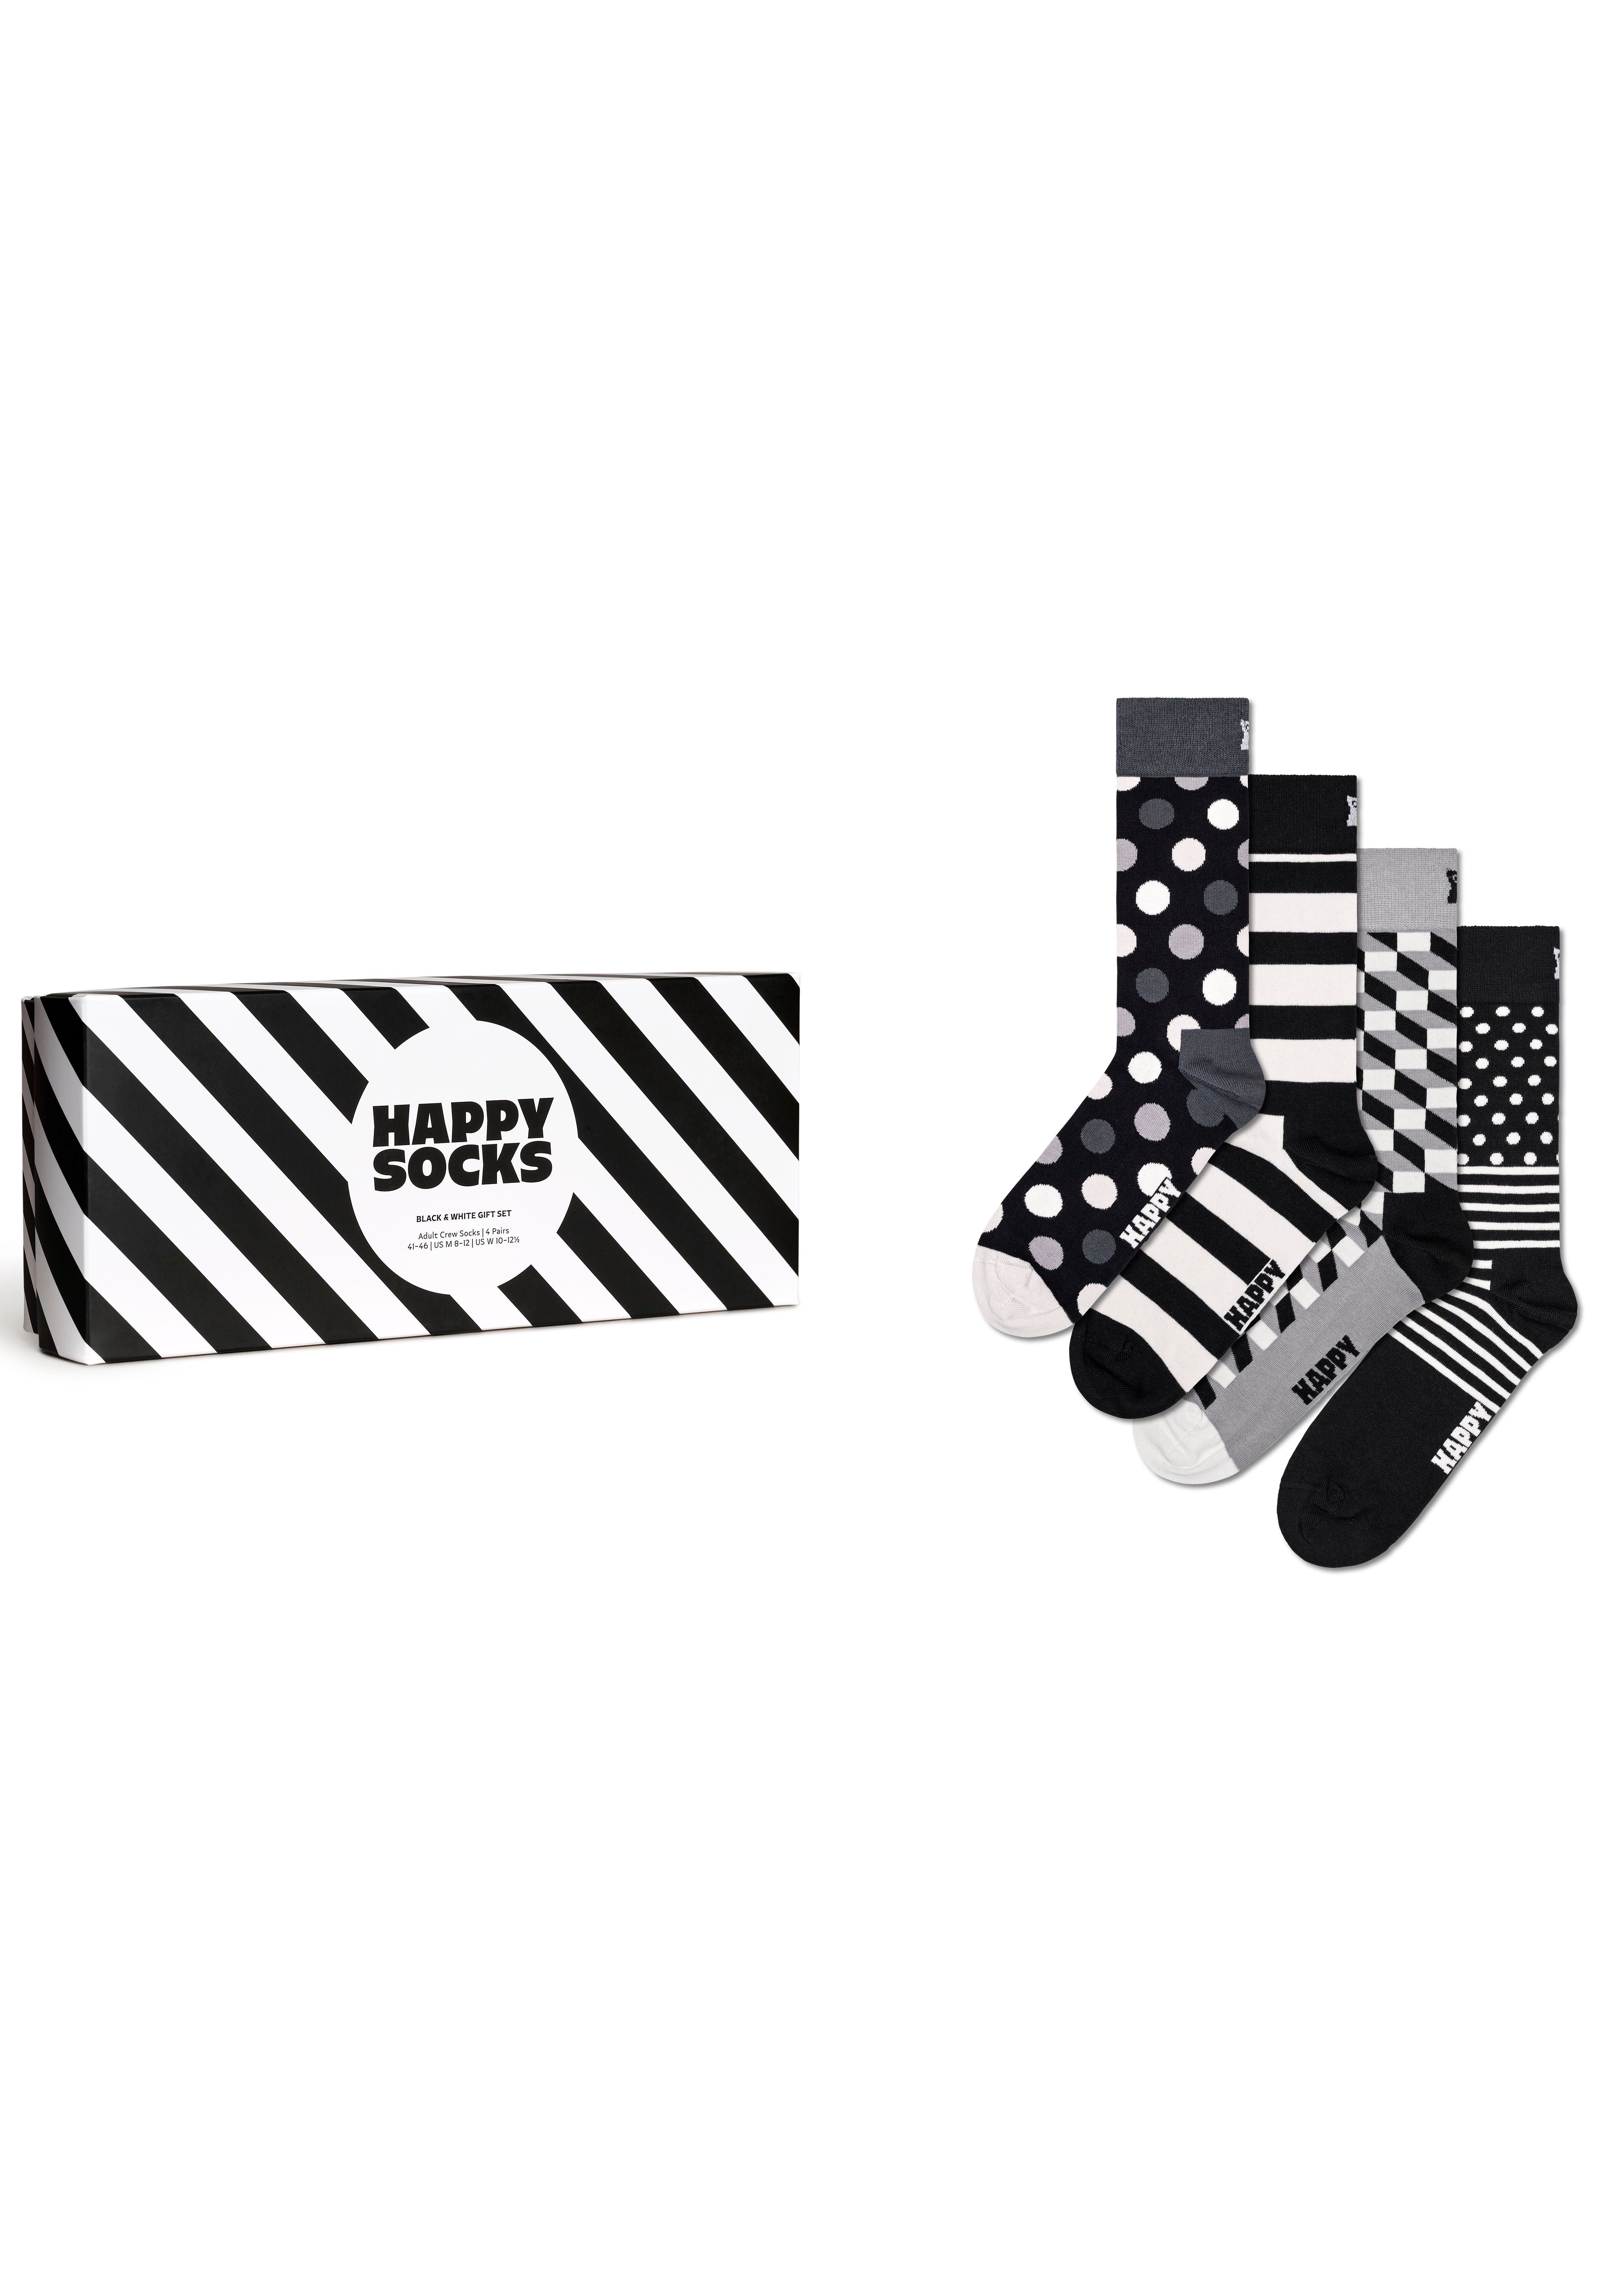 Happy Socks Socken & White Classic (Packung, Set 4-Paar) Socks Gift Black